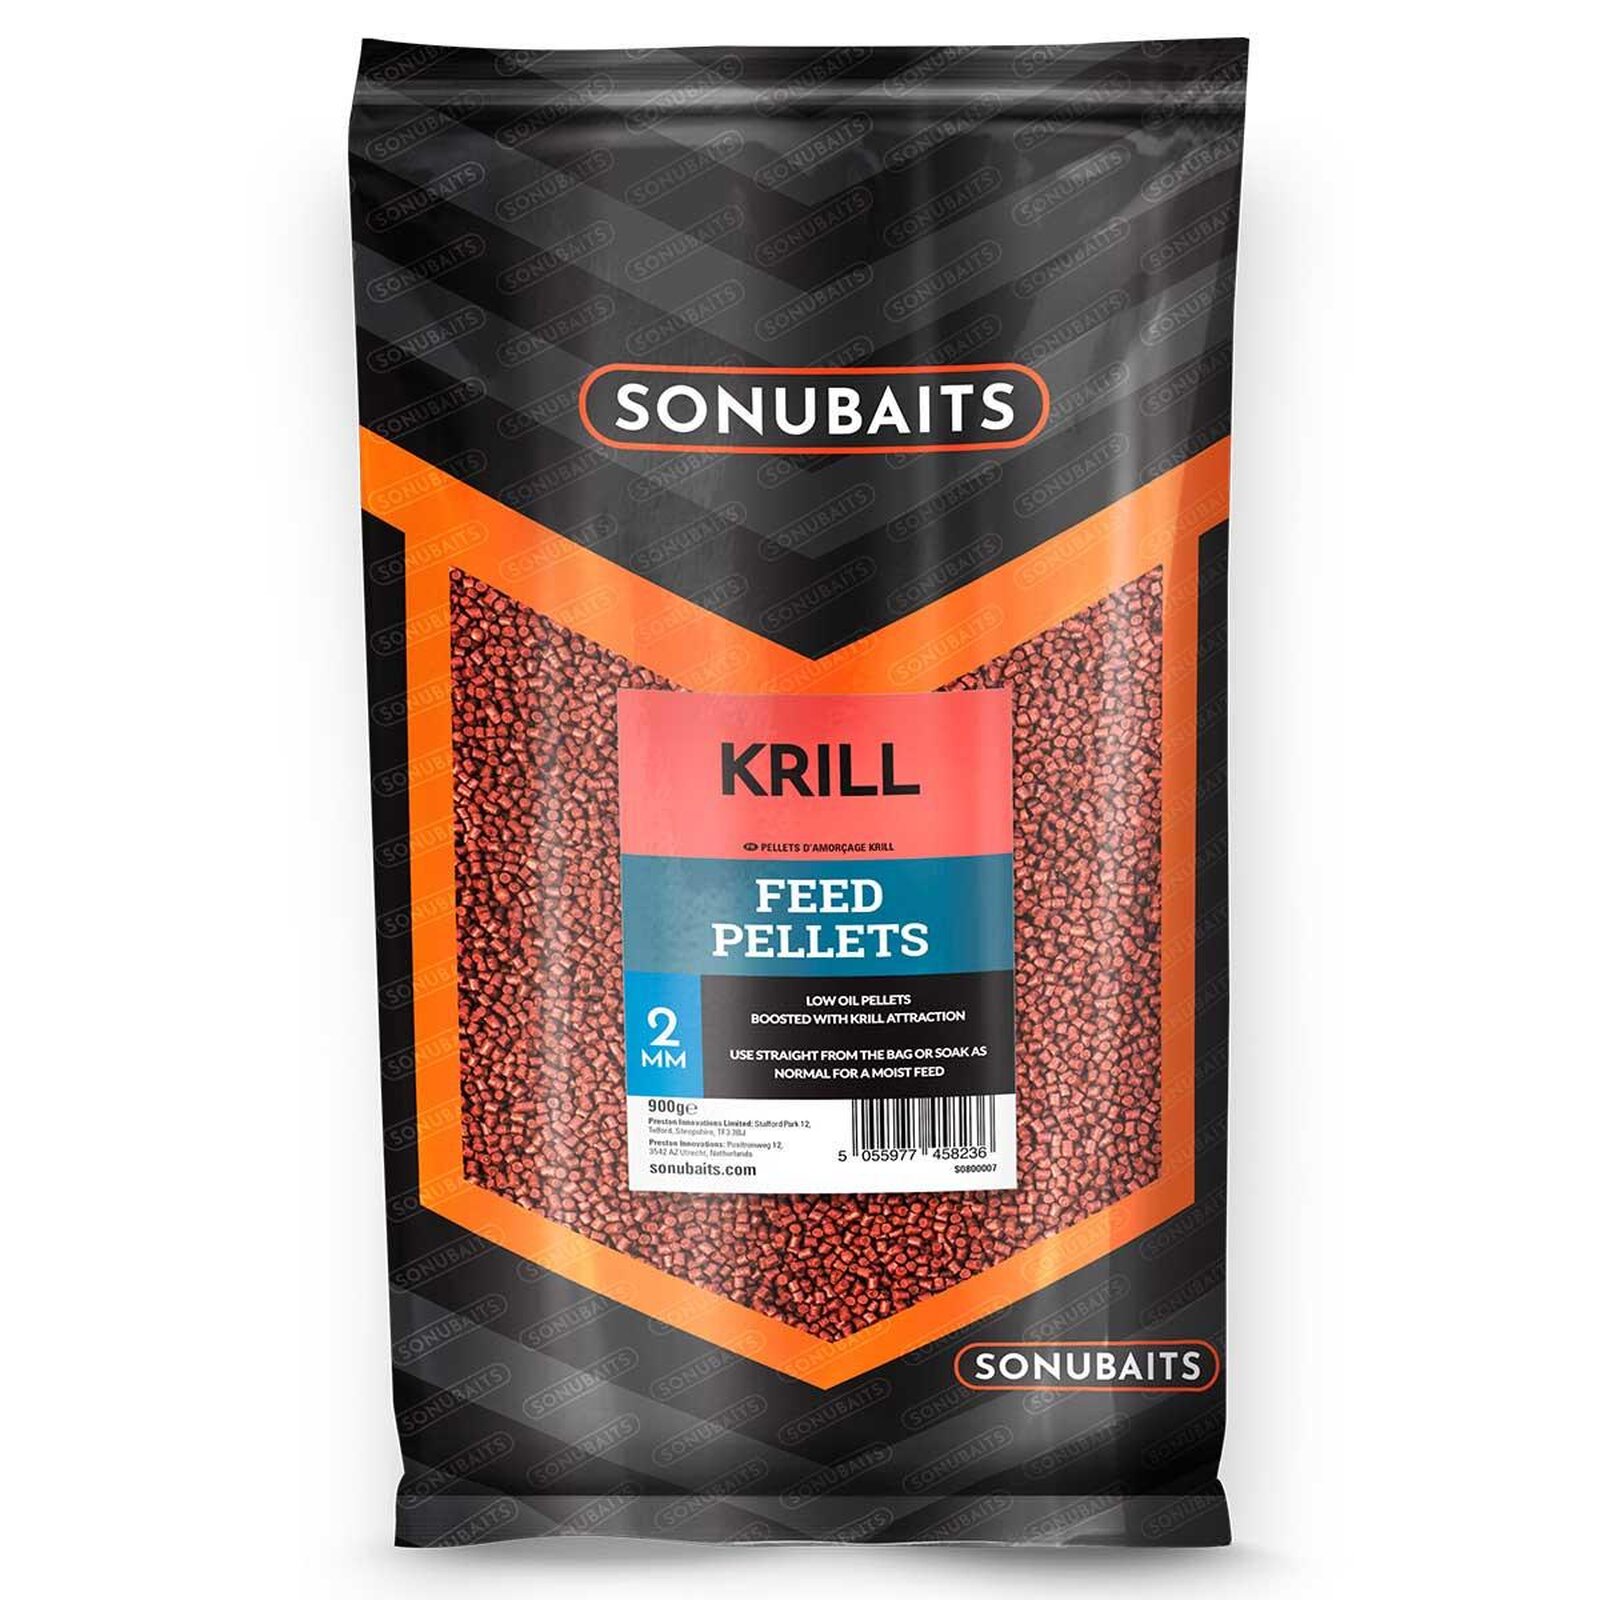 Sonubaits Krill Feed Pellets 2mm 900g